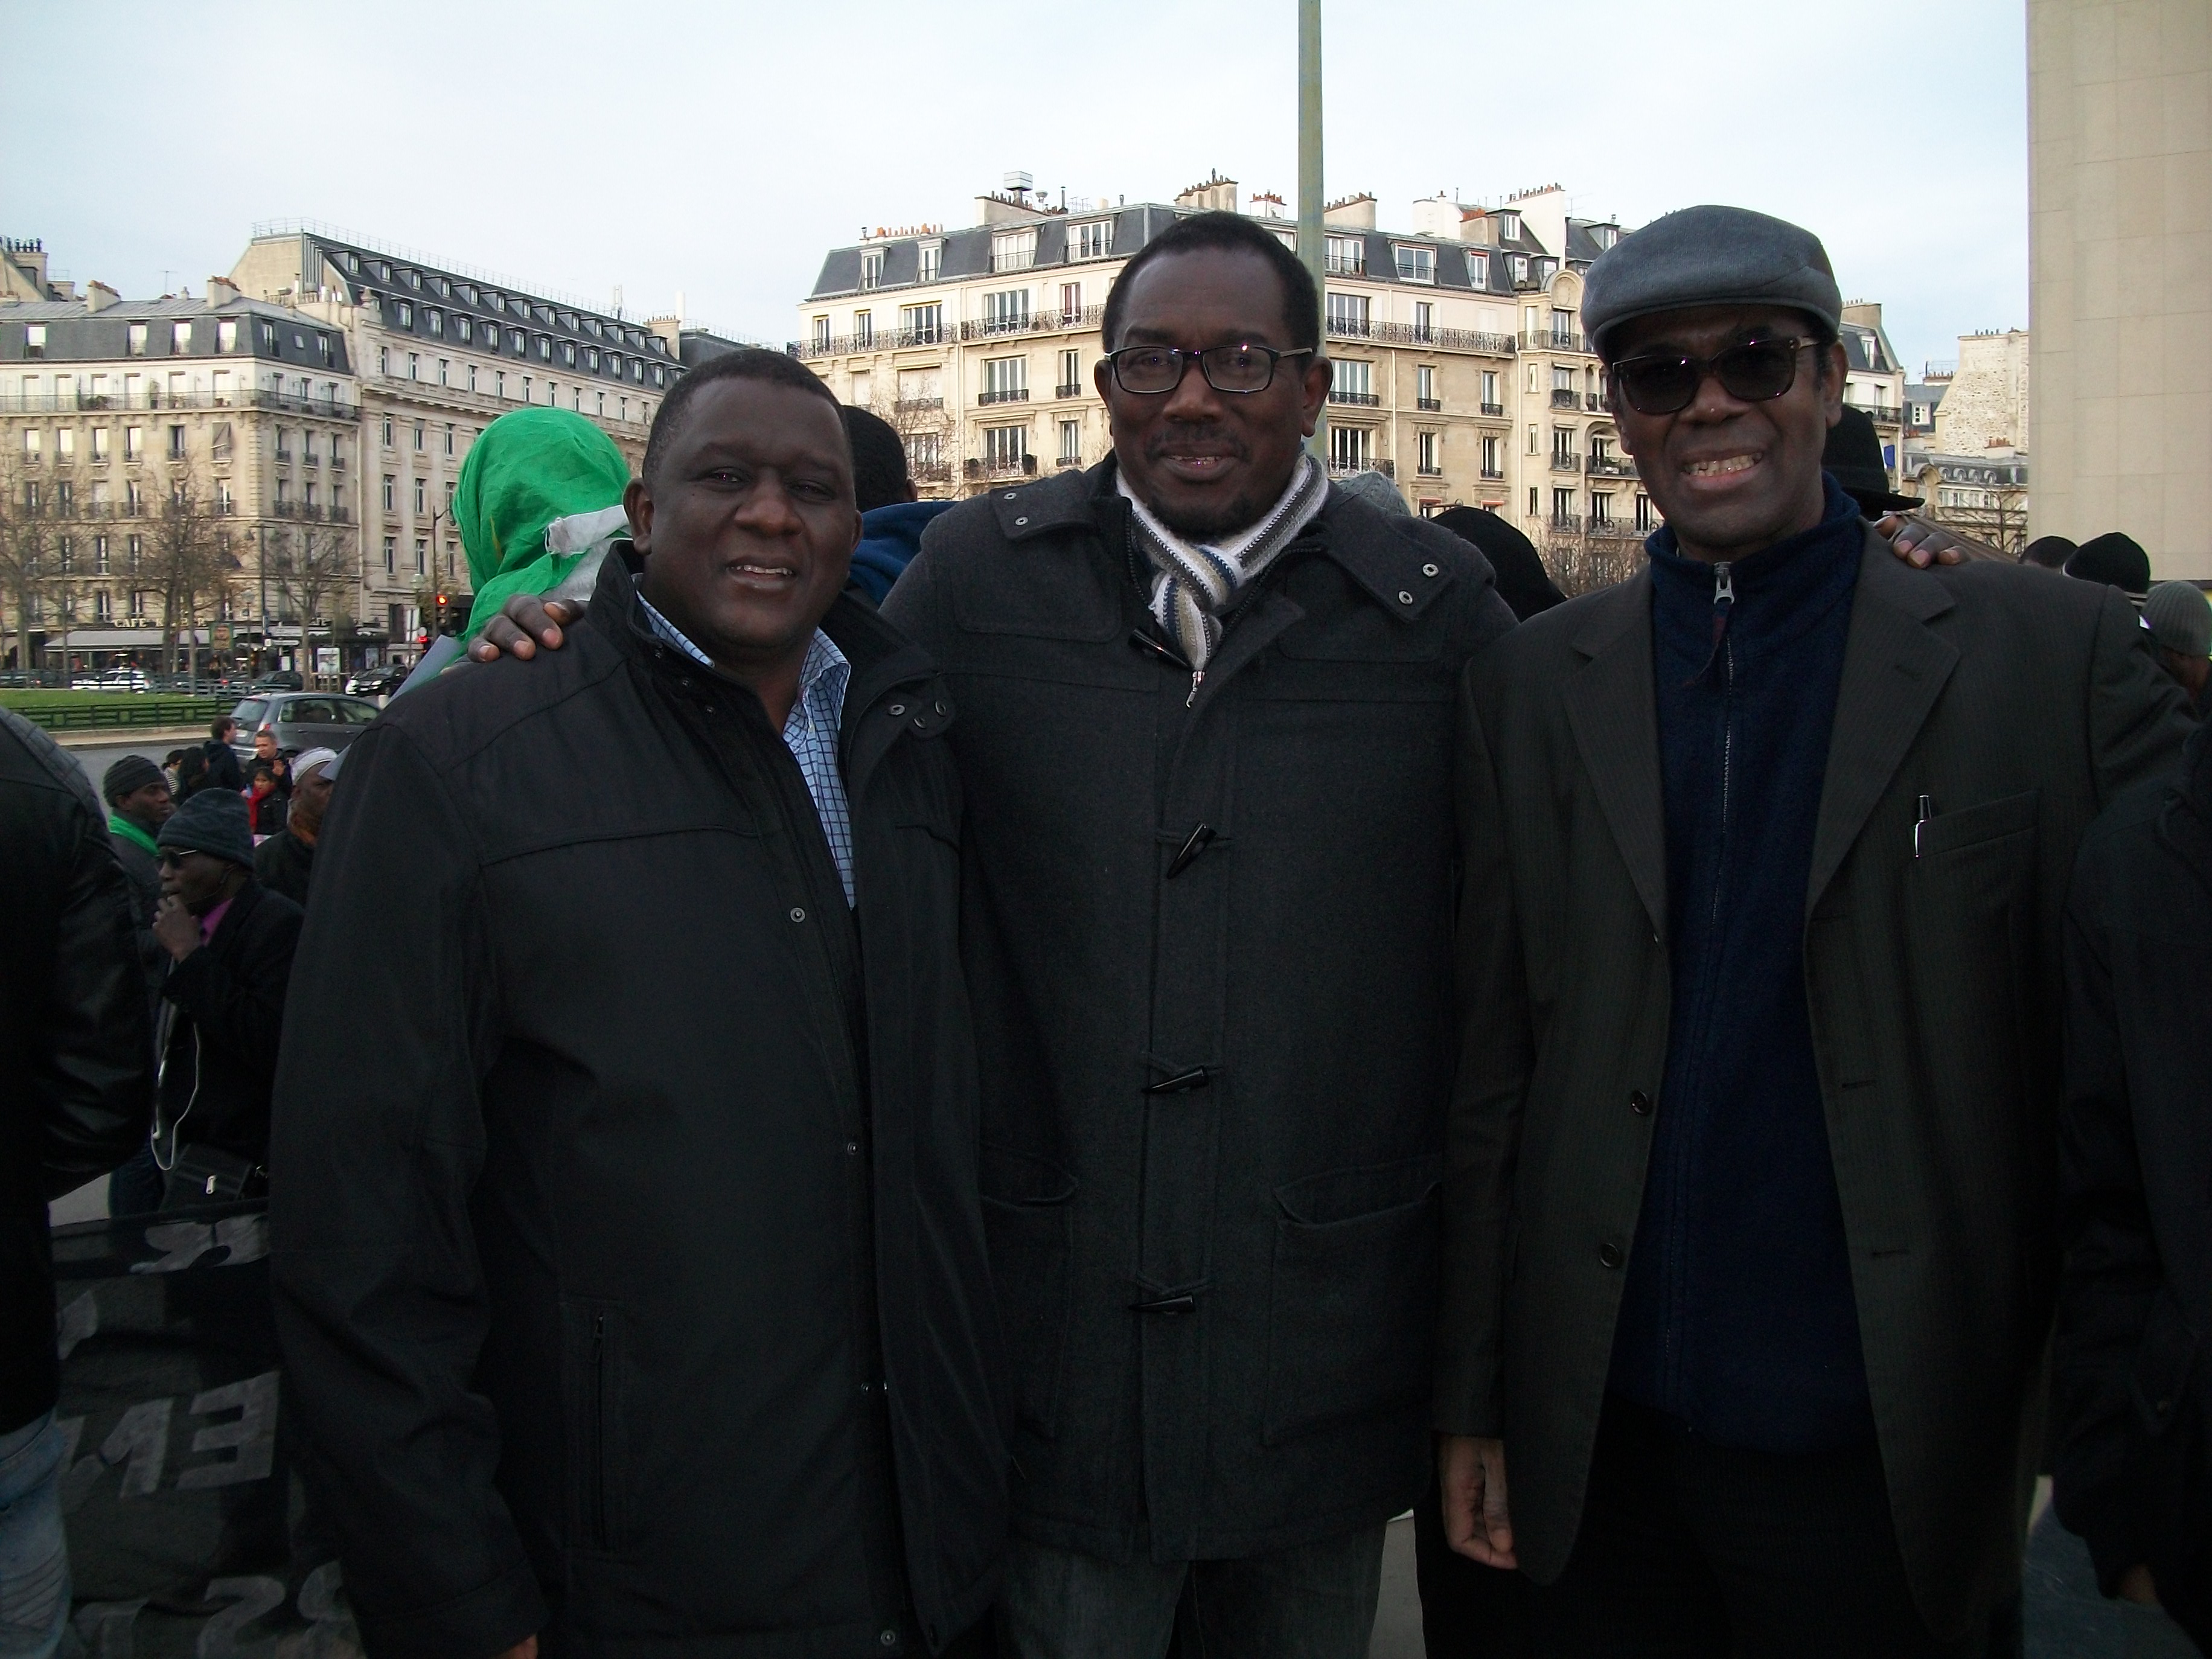 La manifestation du 5 décembre à Paris en images